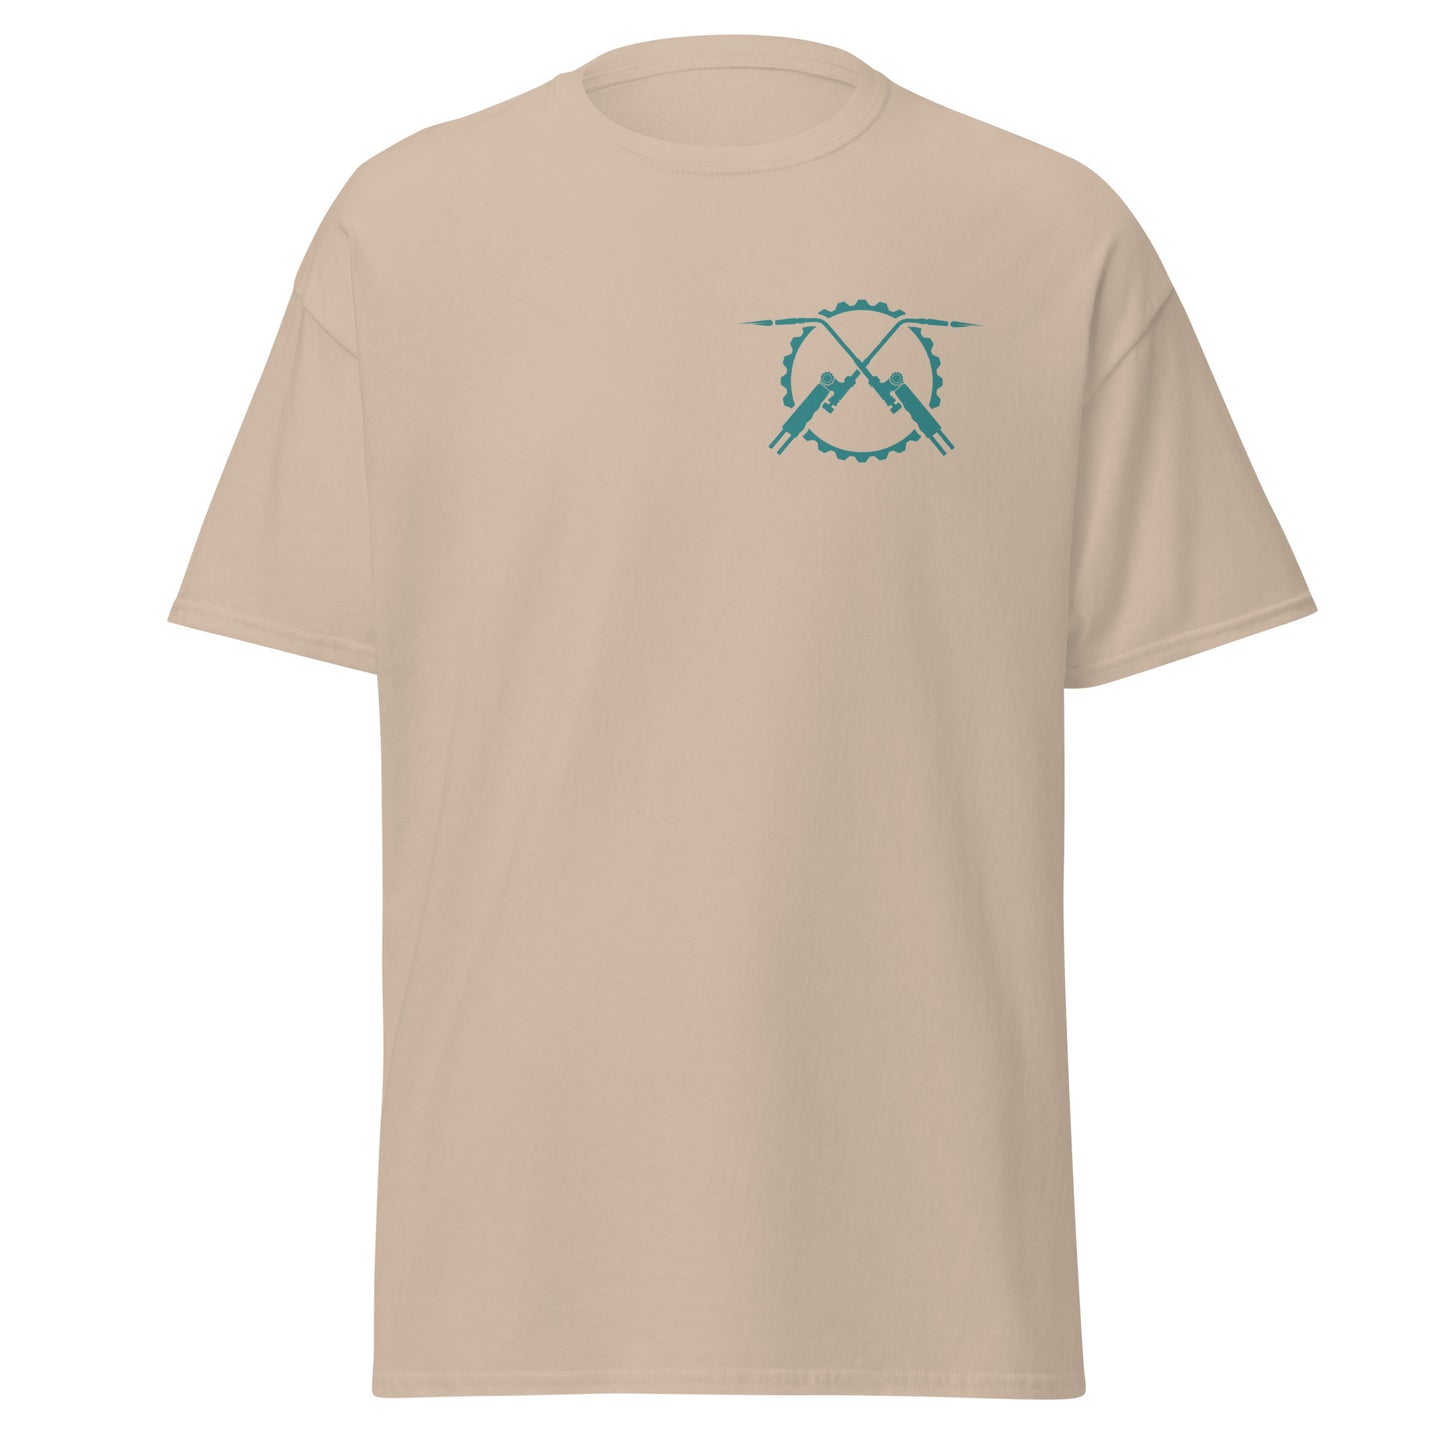 Emerald Warrior T-shirt